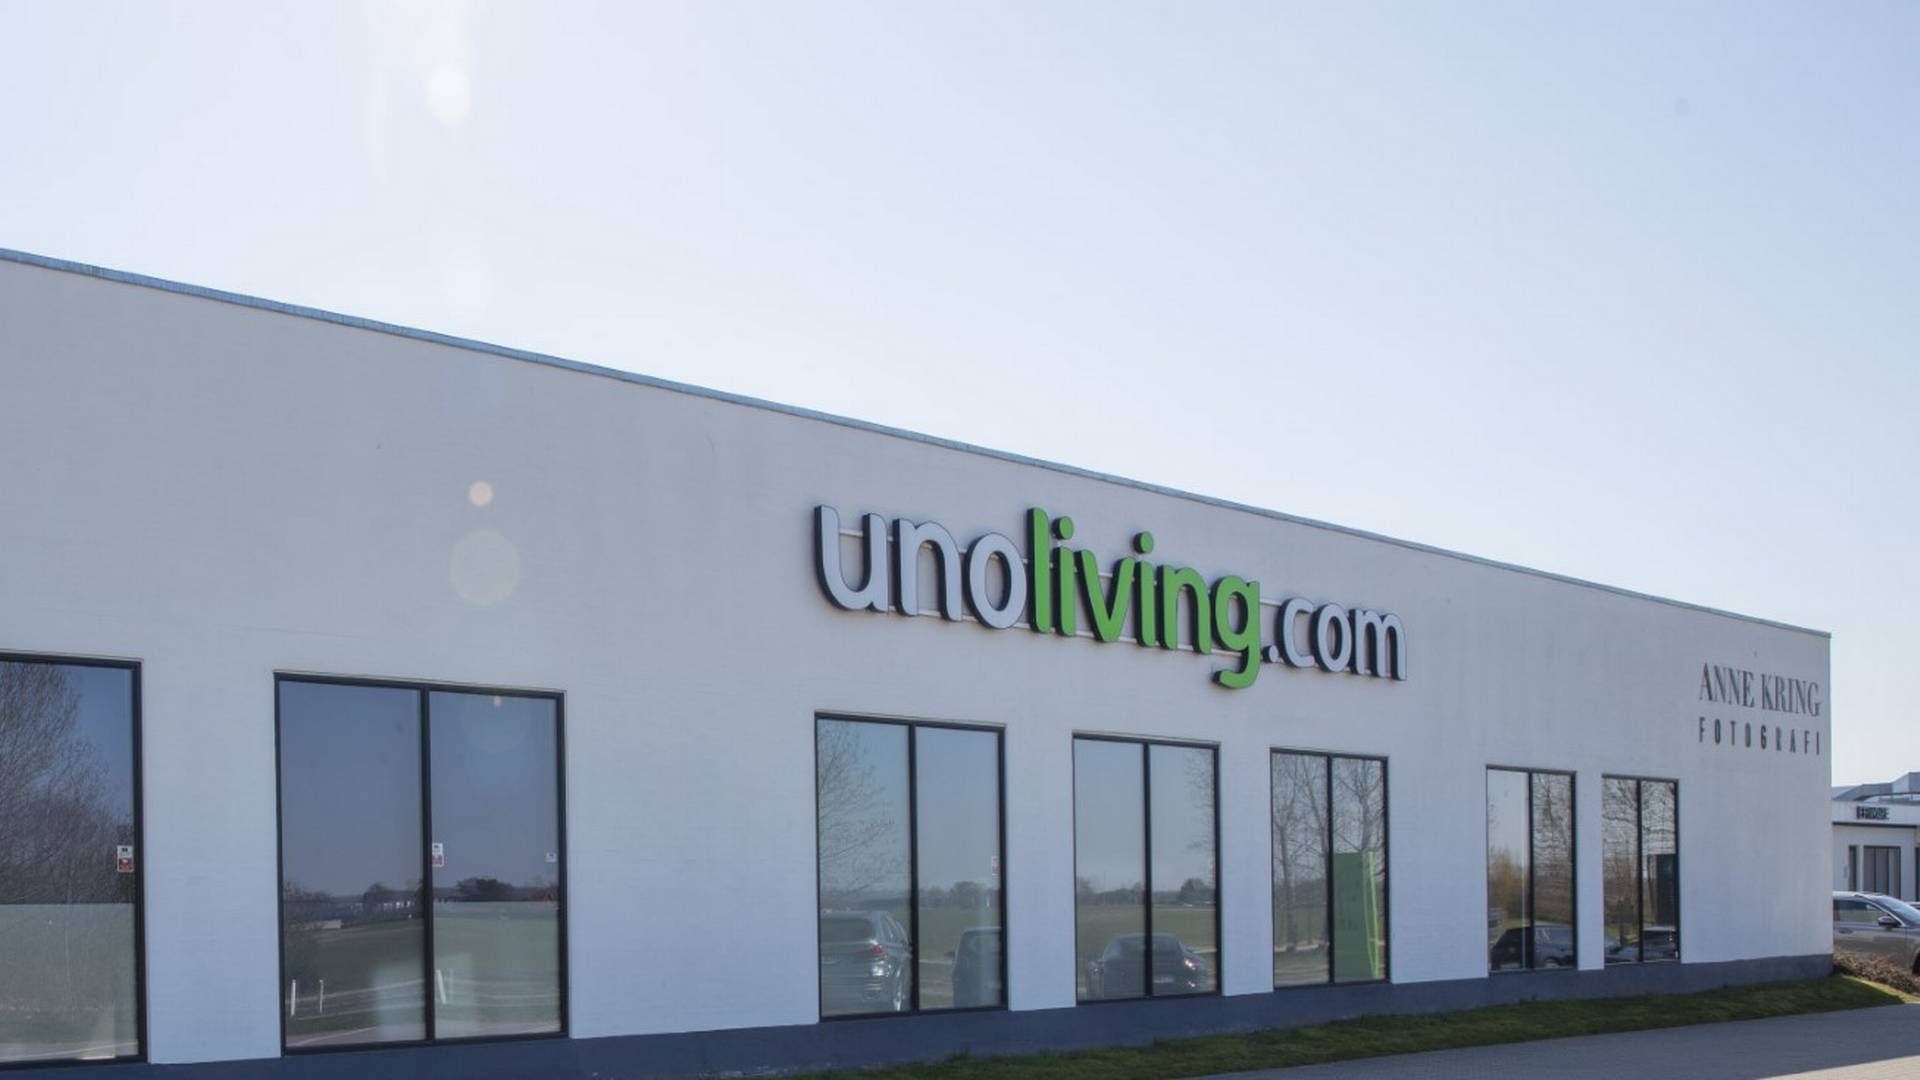 Unoliving blev grundlagt i 2012 og har til huse i Egå ved Aarhus. | Foto: Unoliving/pr